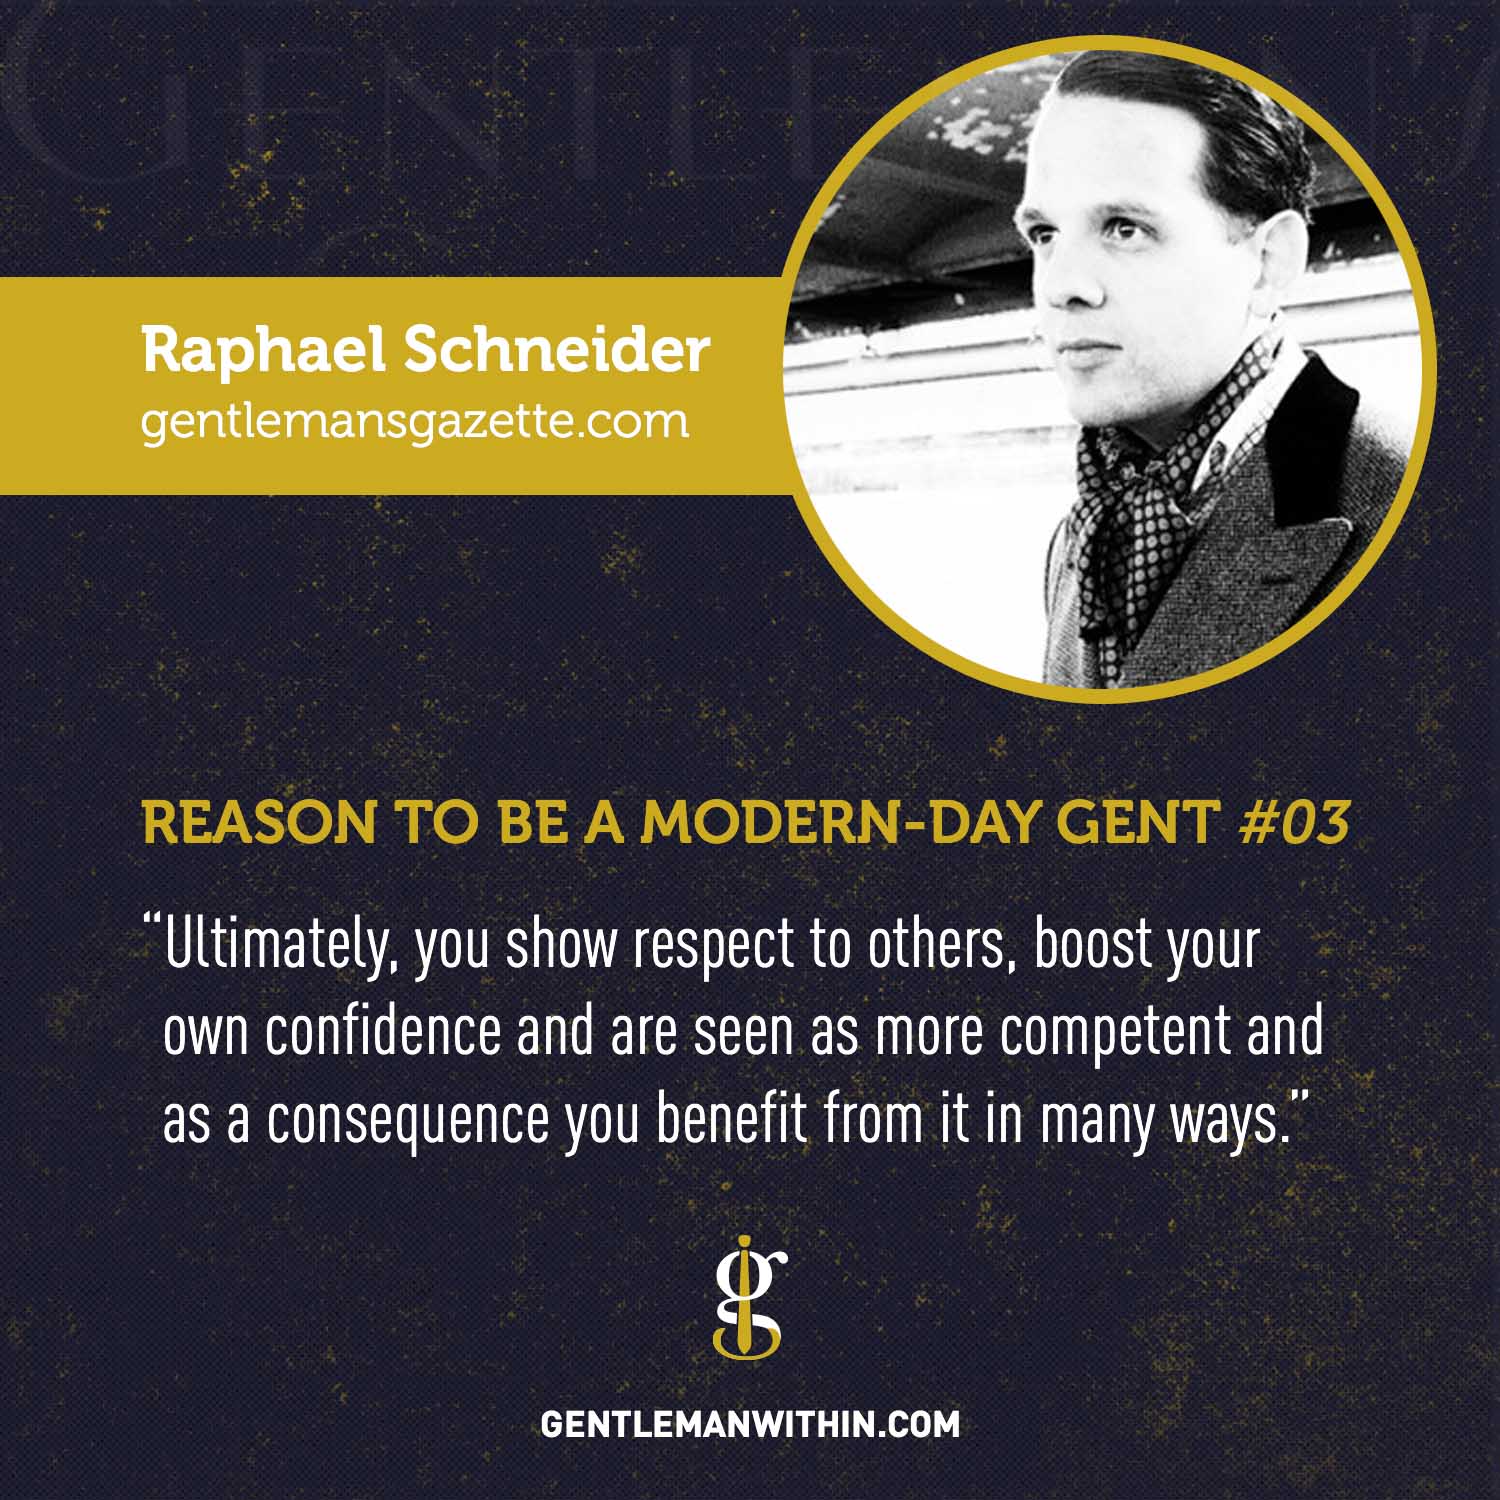 Raphael Schneider Reason To Be A Modern-Day Gentleman